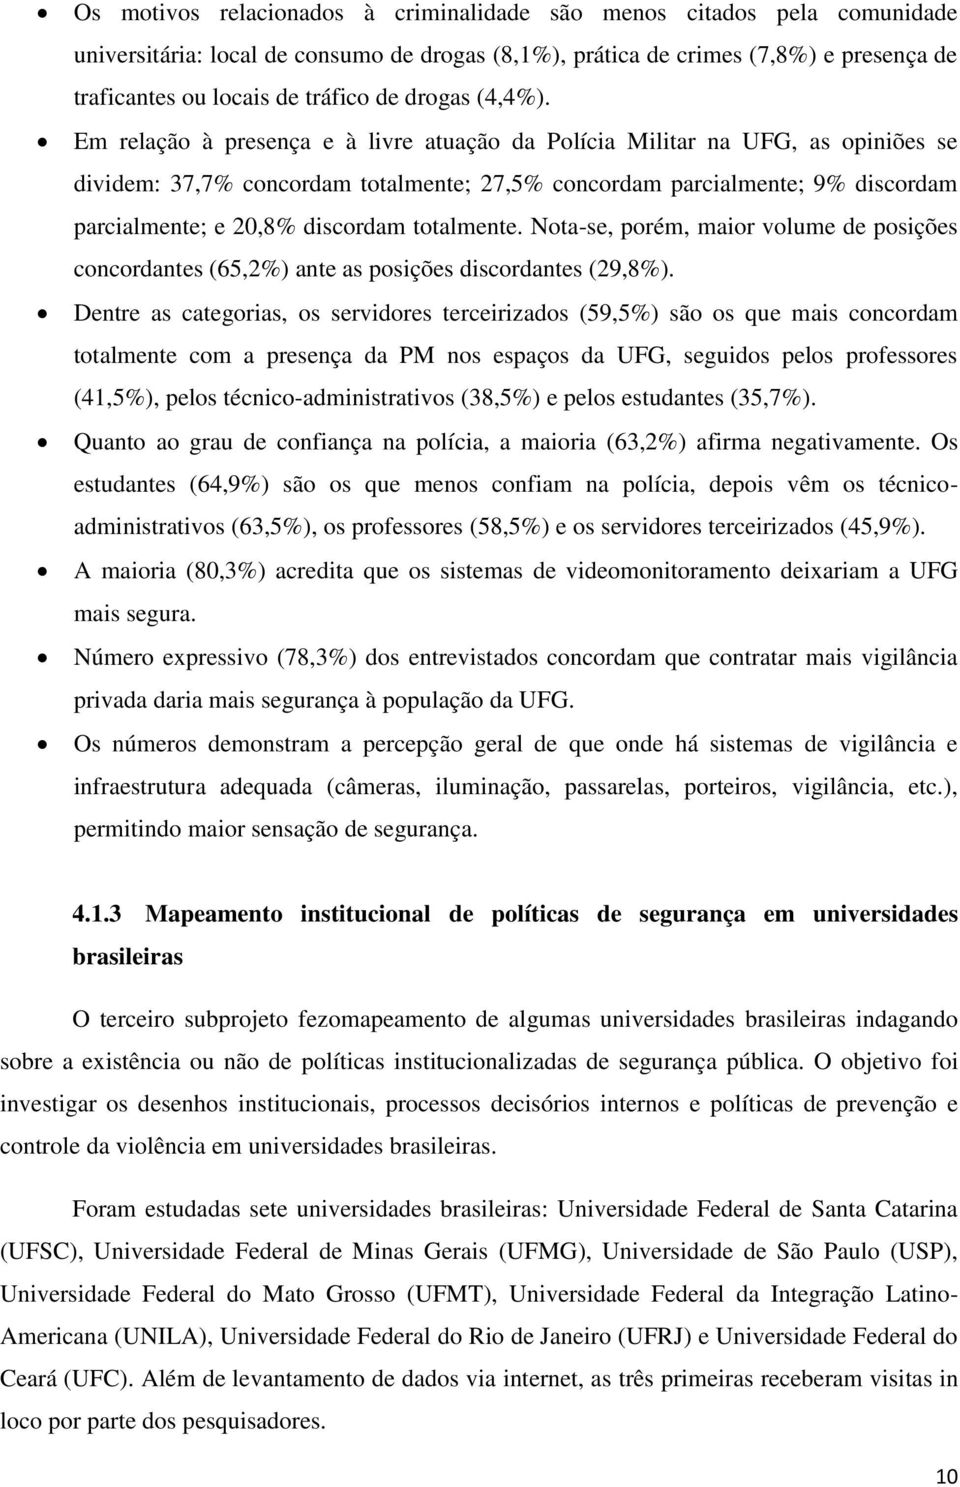 Em relação à presença e à livre atuação da Polícia Militar na UFG, as opiniões se dividem: 37,7% concordam totalmente; 27,5% concordam parcialmente; 9% discordam parcialmente; e 20,8% discordam